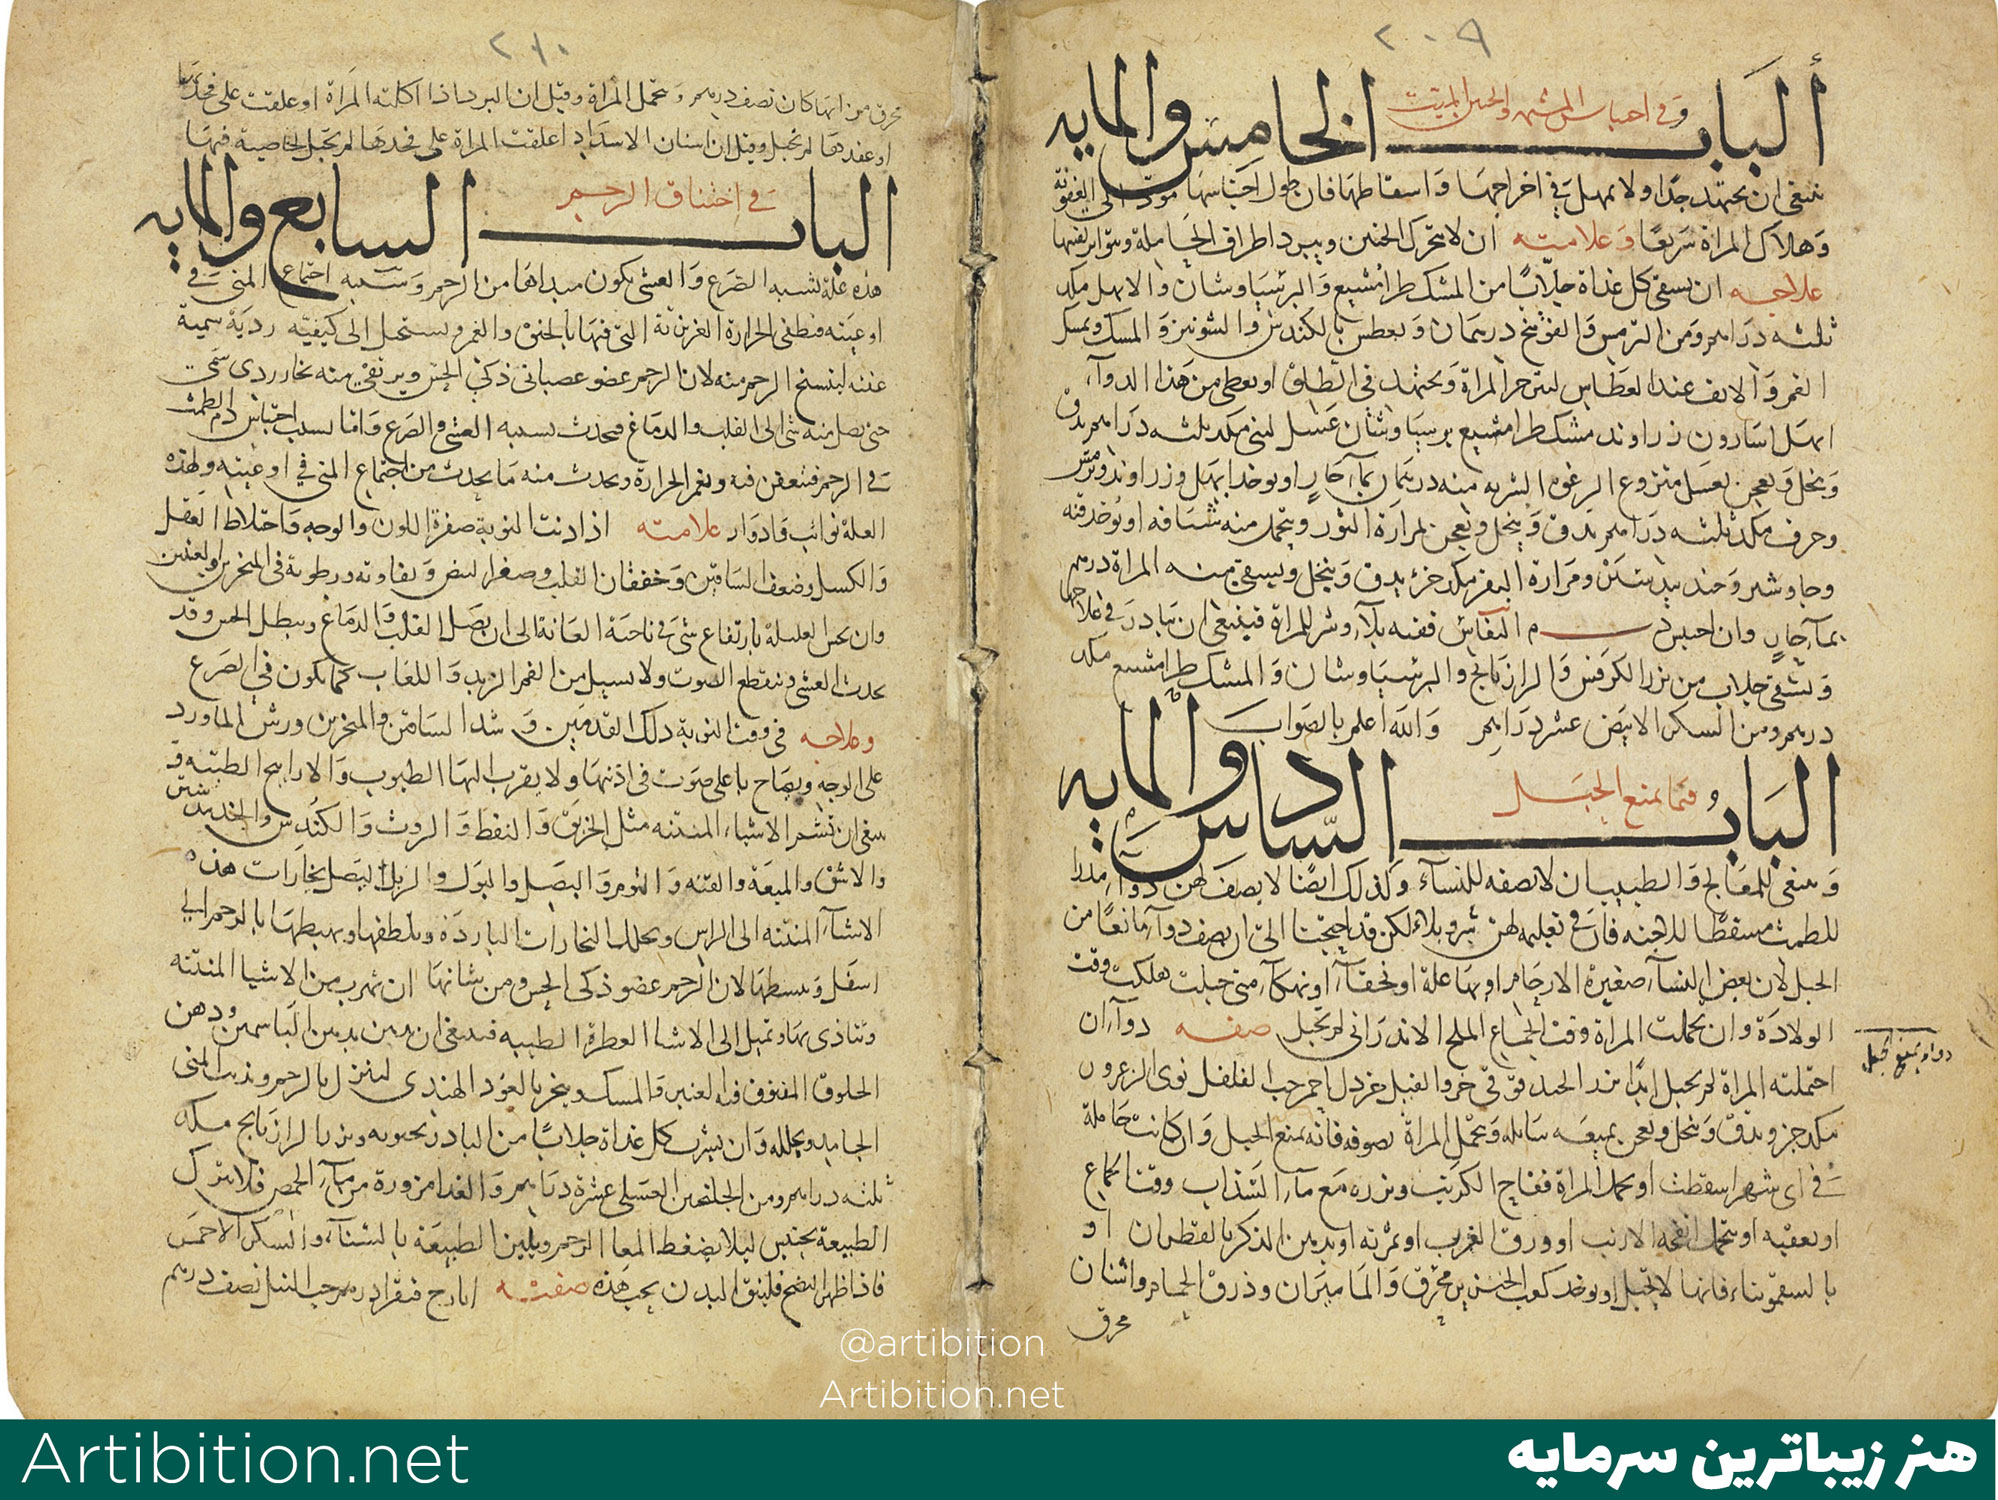 یک ورق خوشنویسی در خط نسخ- ایران دوره قاجار قرن 19 